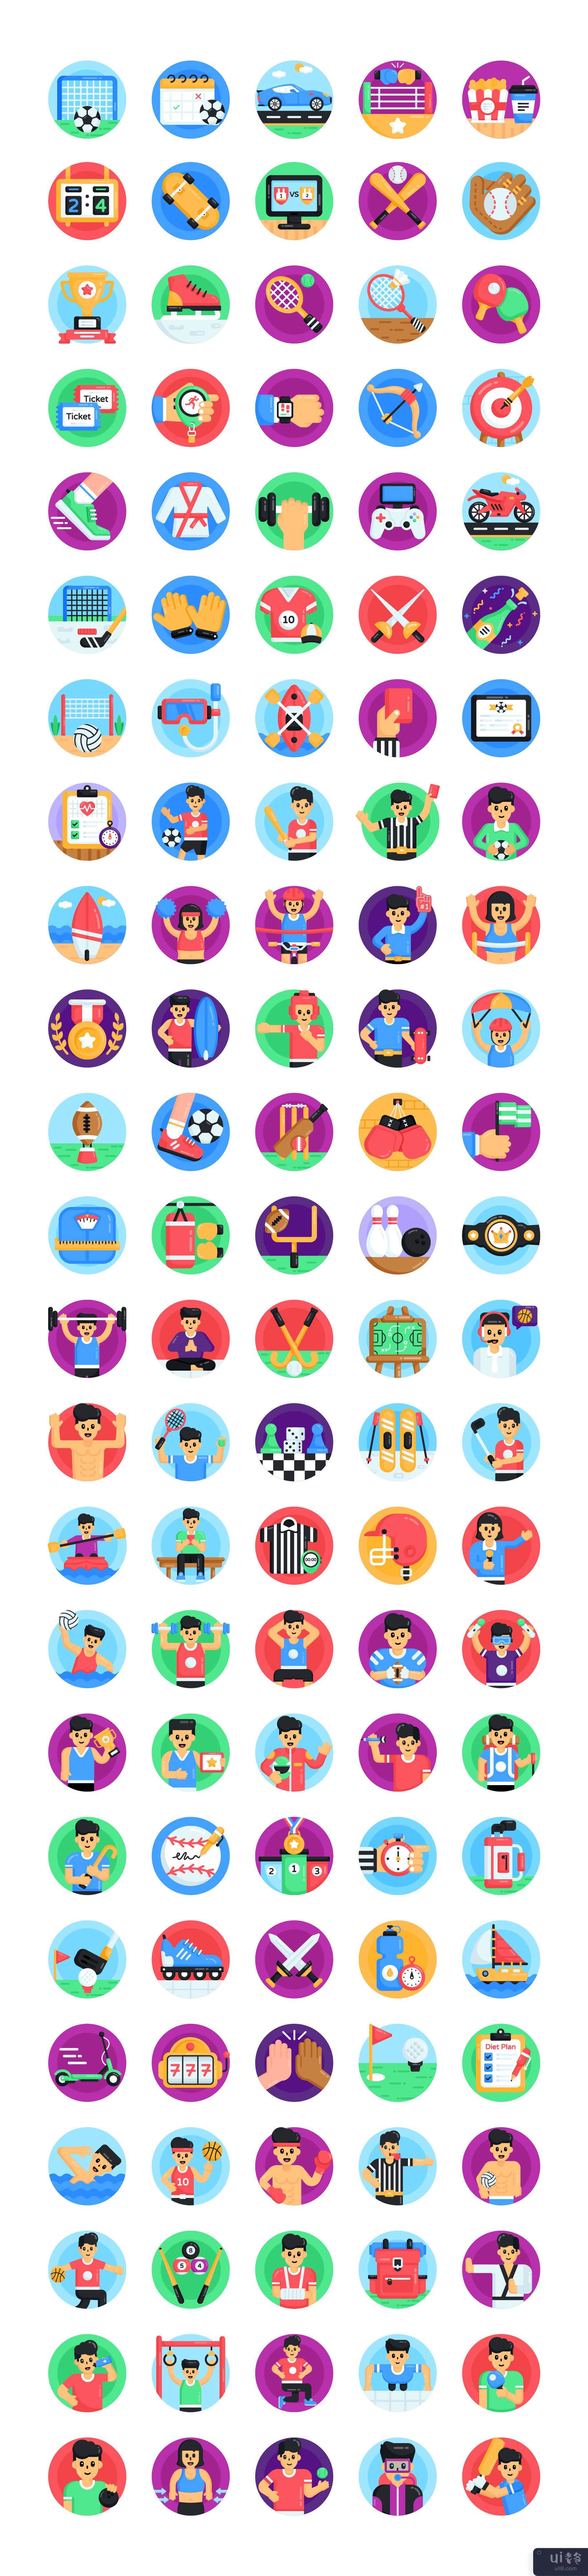 120 个体育和游戏图标(120 Sports And Games icons)插图3